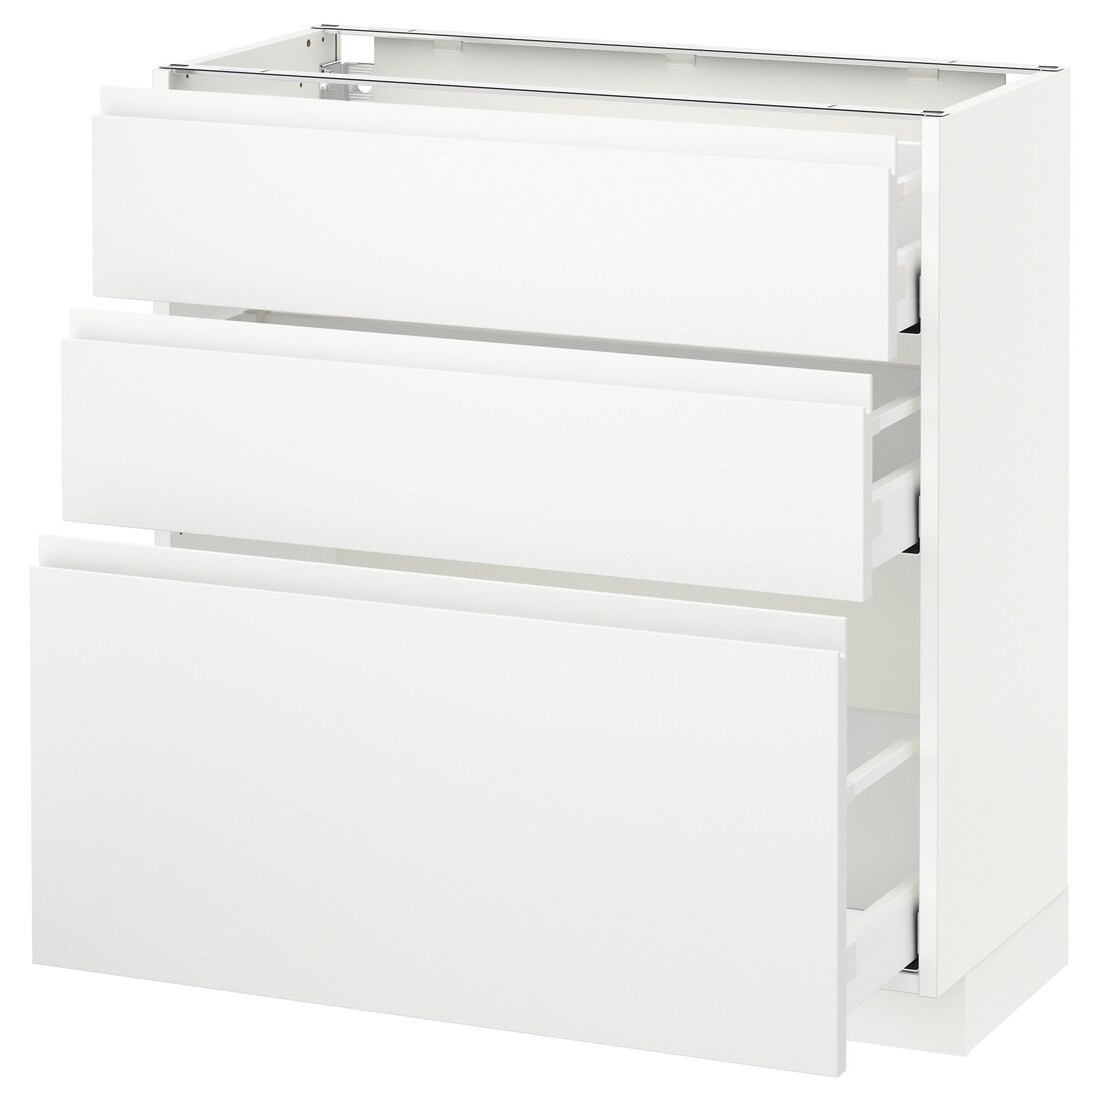 IKEA METOD МЕТОД / MAXIMERA МАКСІМЕРА Підлогова шафа з 3 шухлядами, білий / Voxtorp матовий білий, 80x37 см 19112837 191.128.37